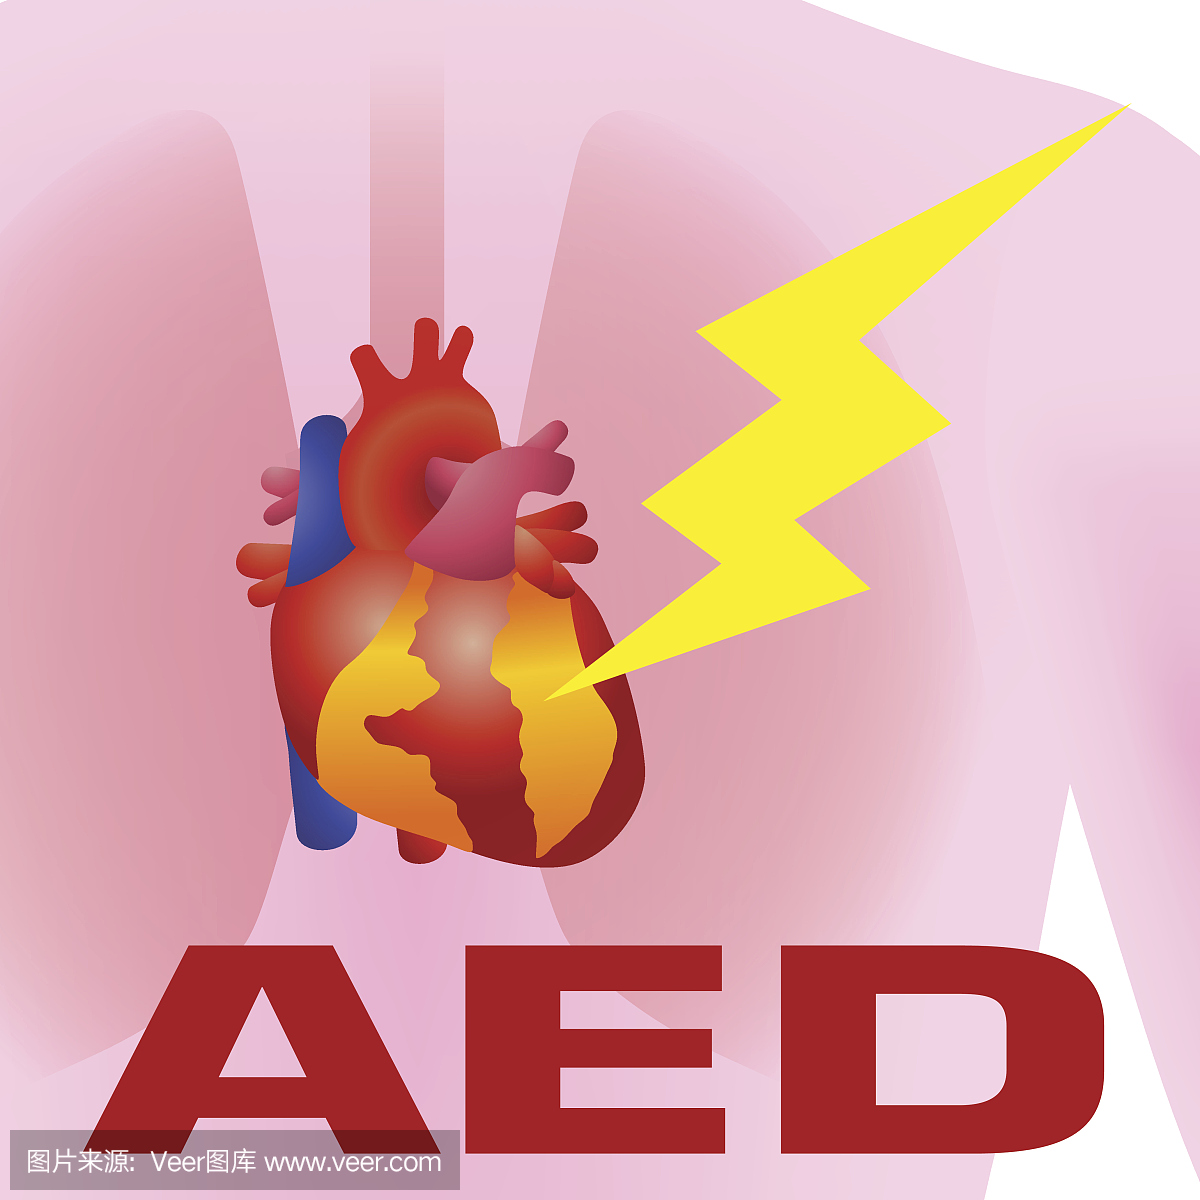 除颤器,自动外部除颤器(AED)